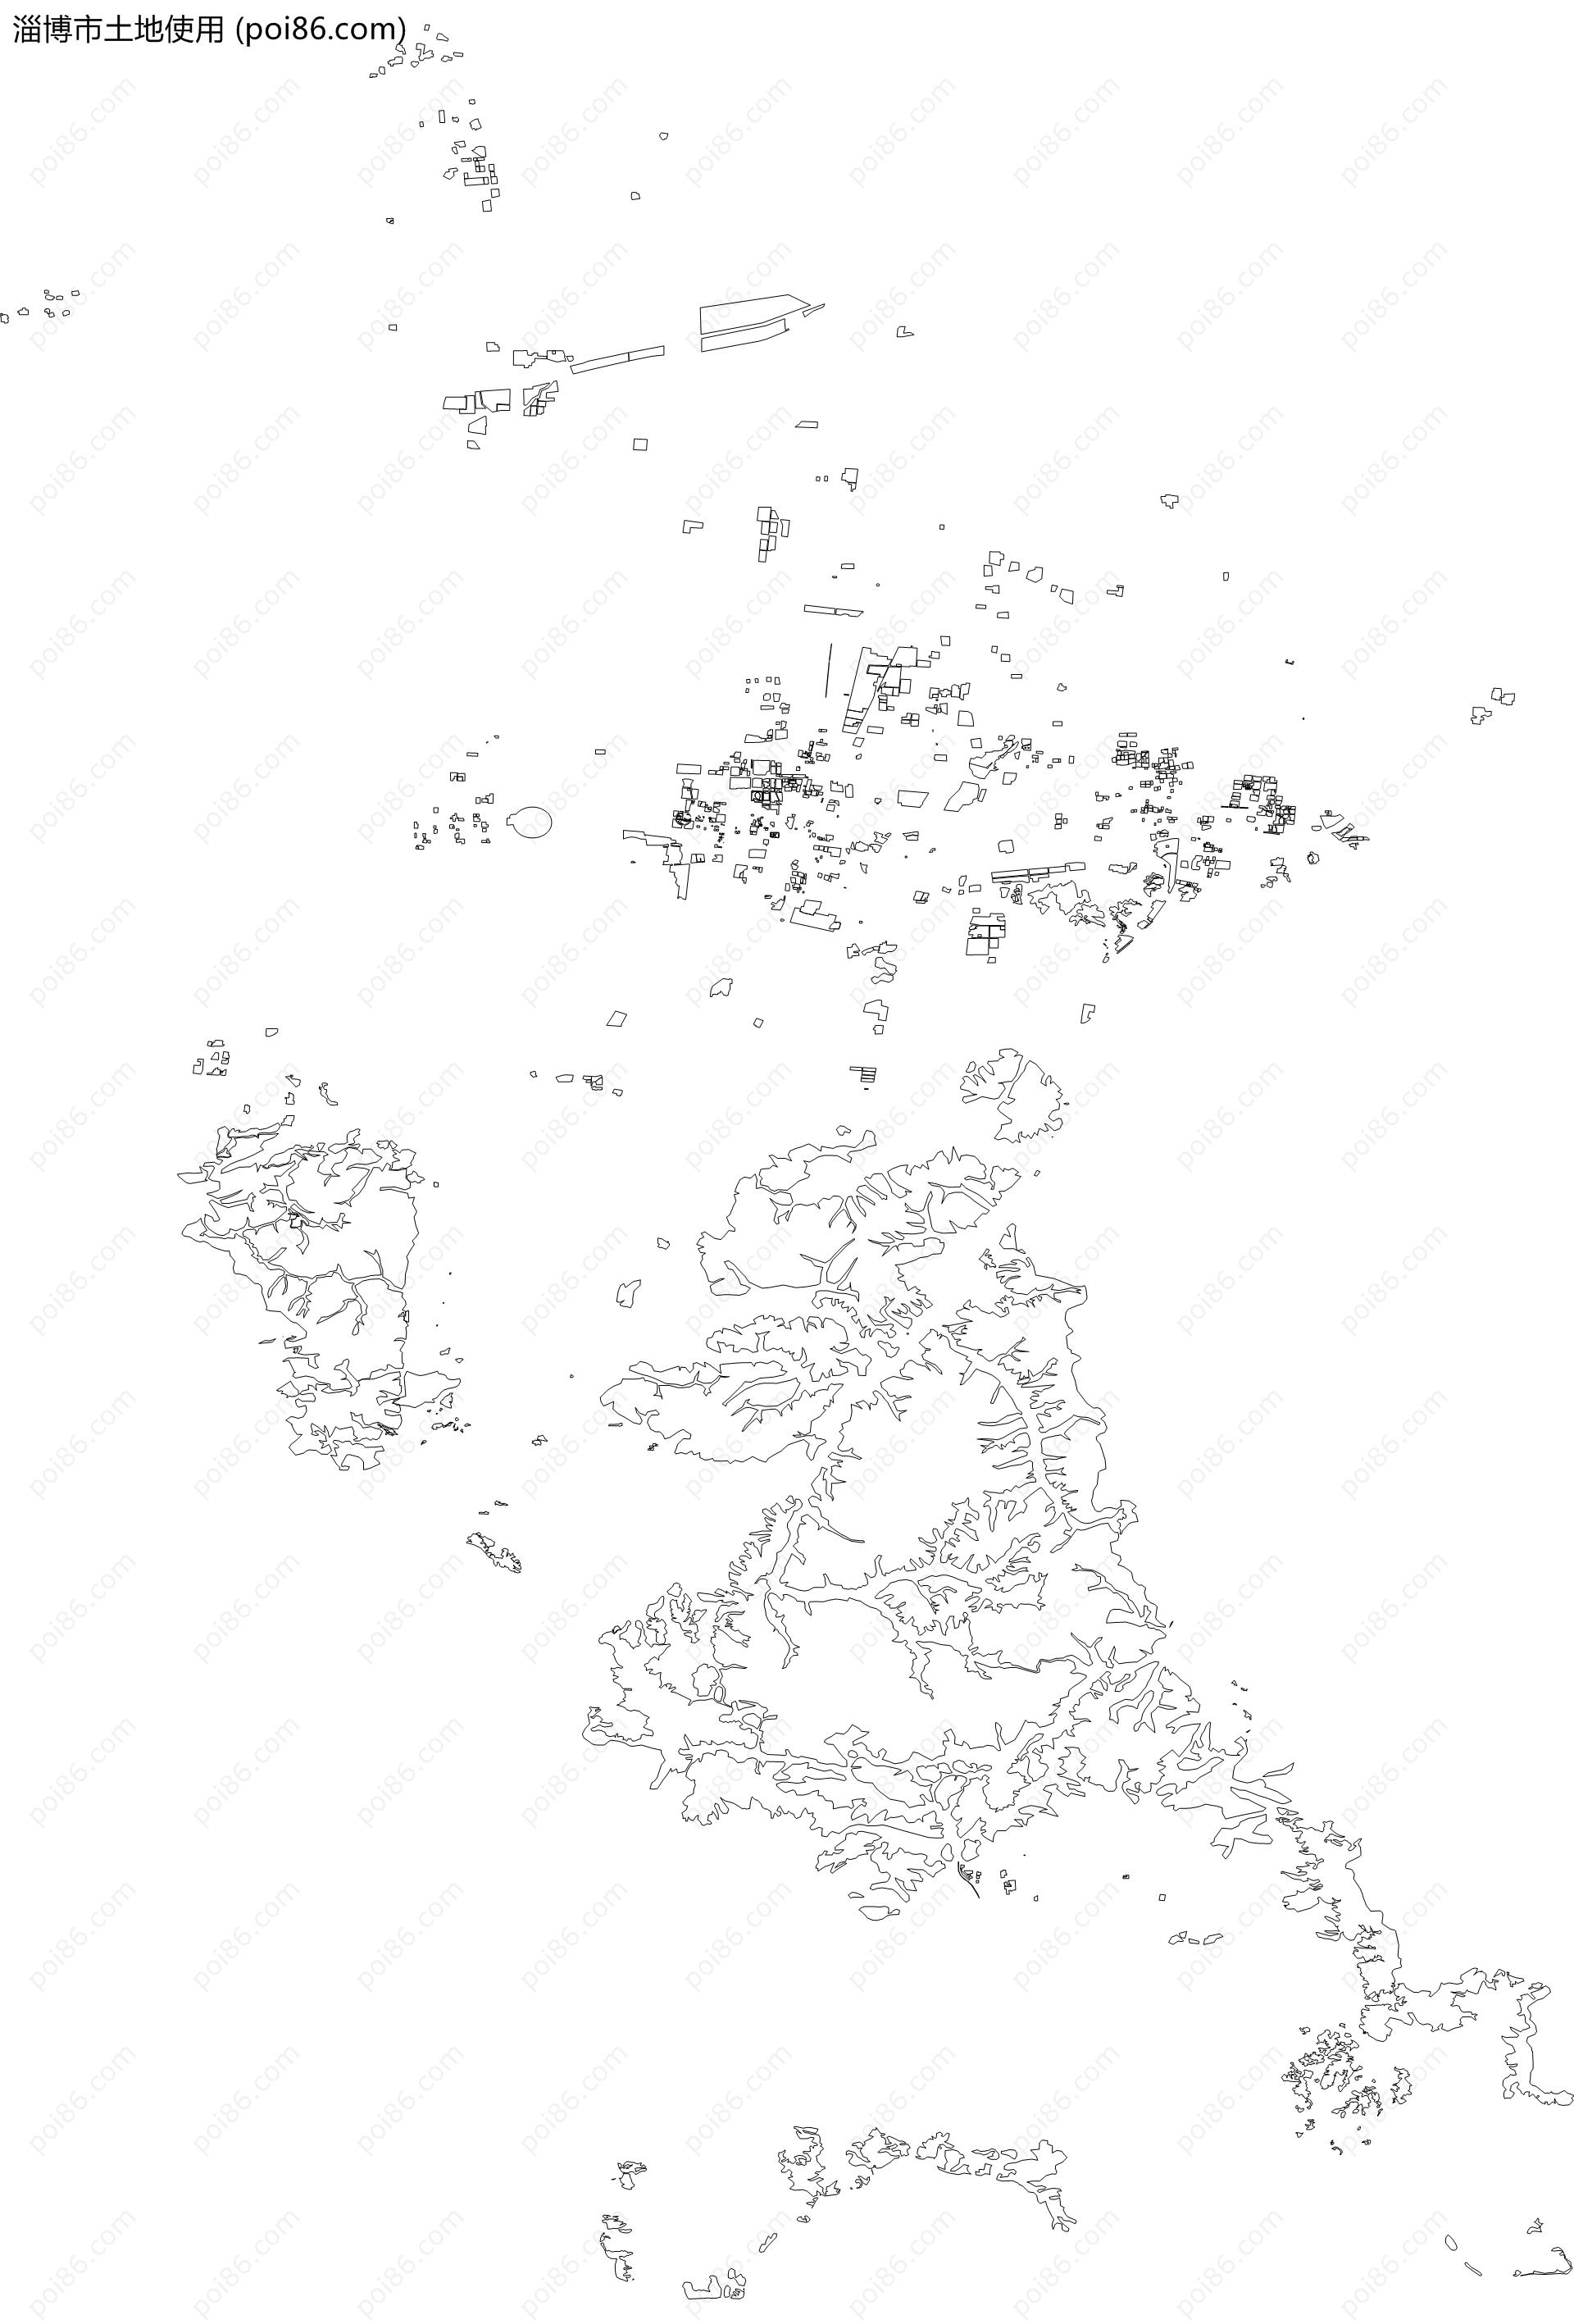 淄博市土地使用地图